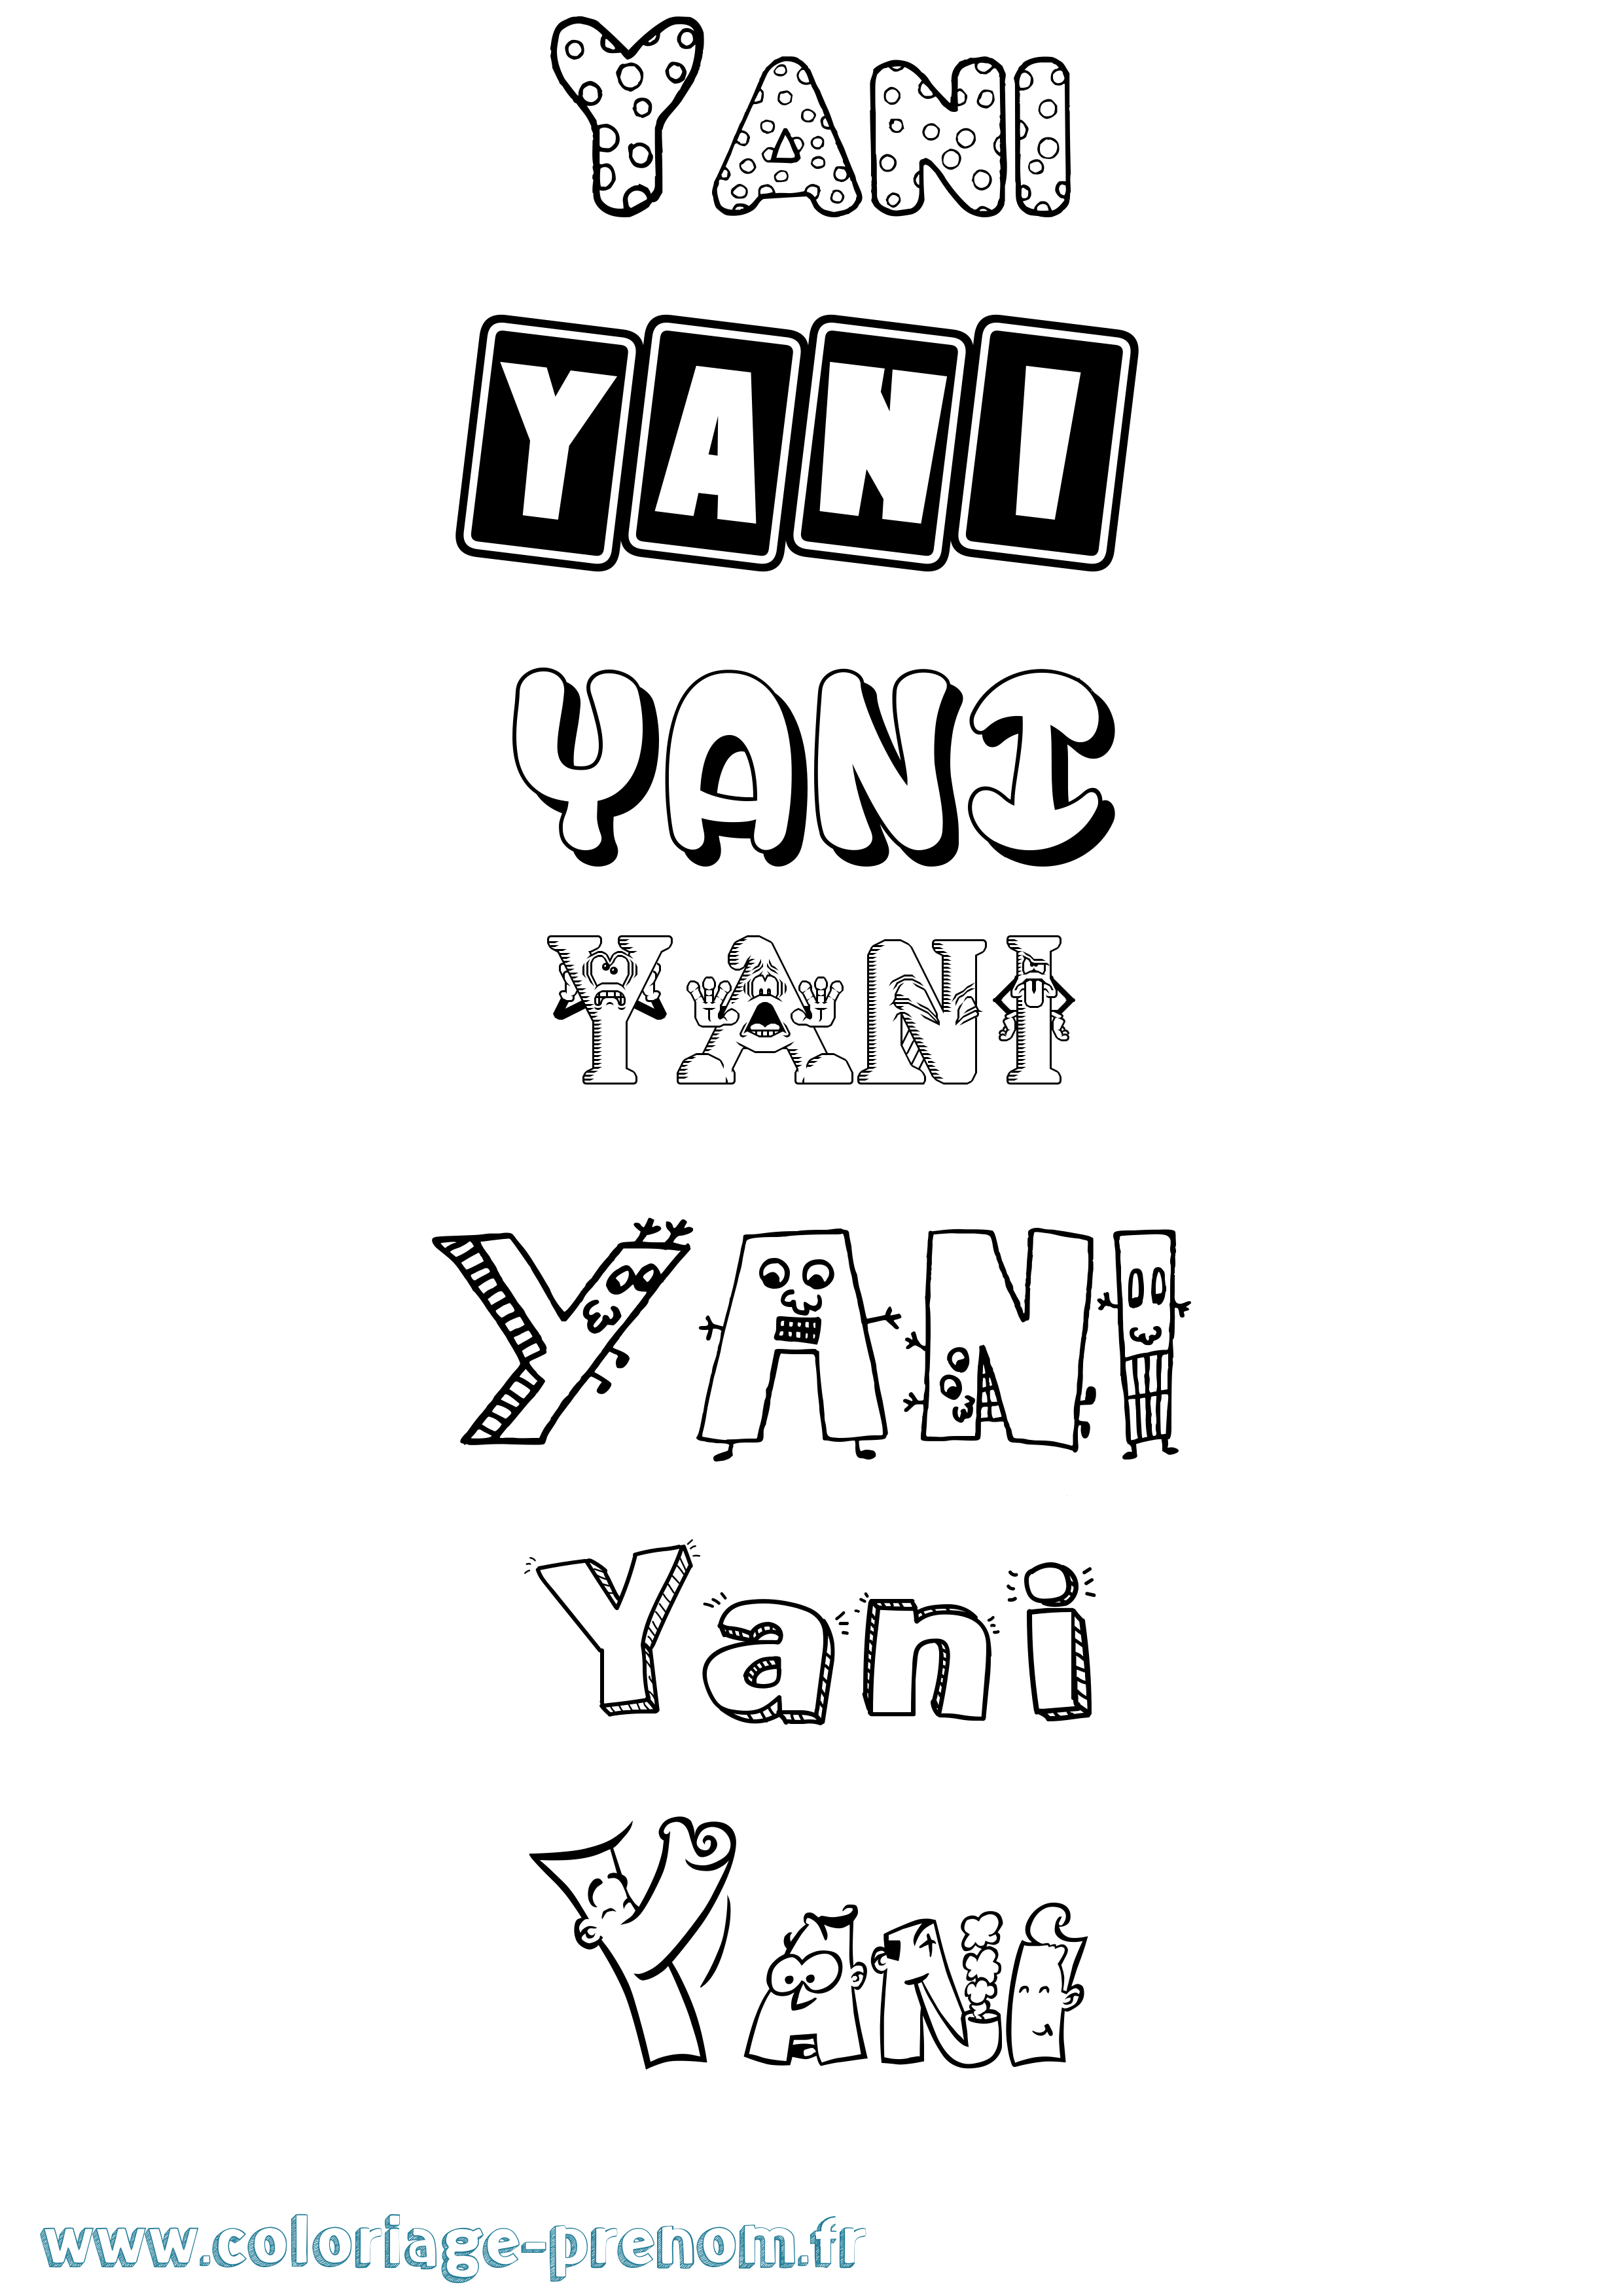 Coloriage prénom Yani Fun